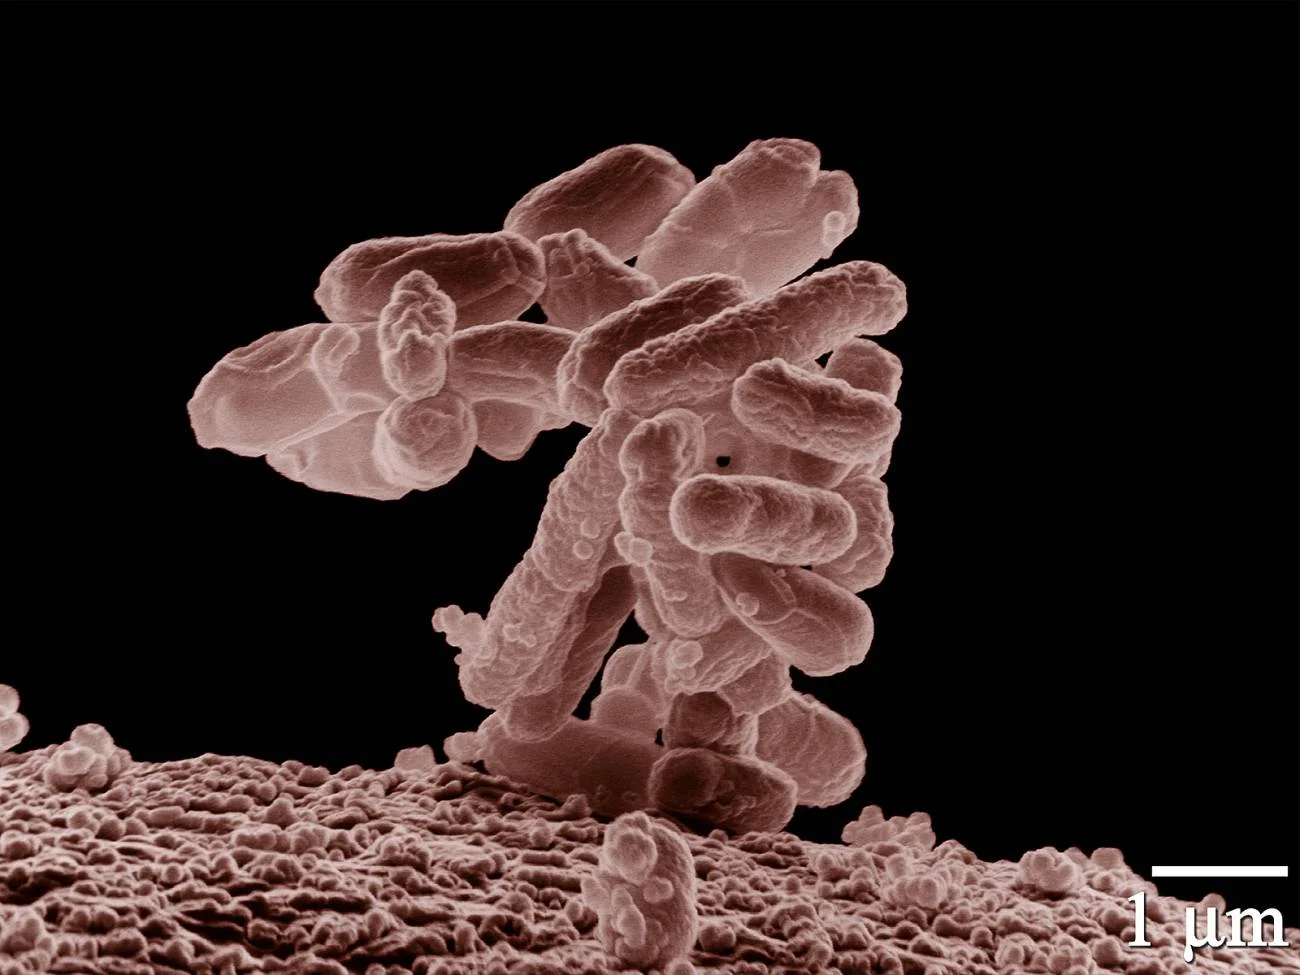 La evolucion de las bacterias puede ser predecible